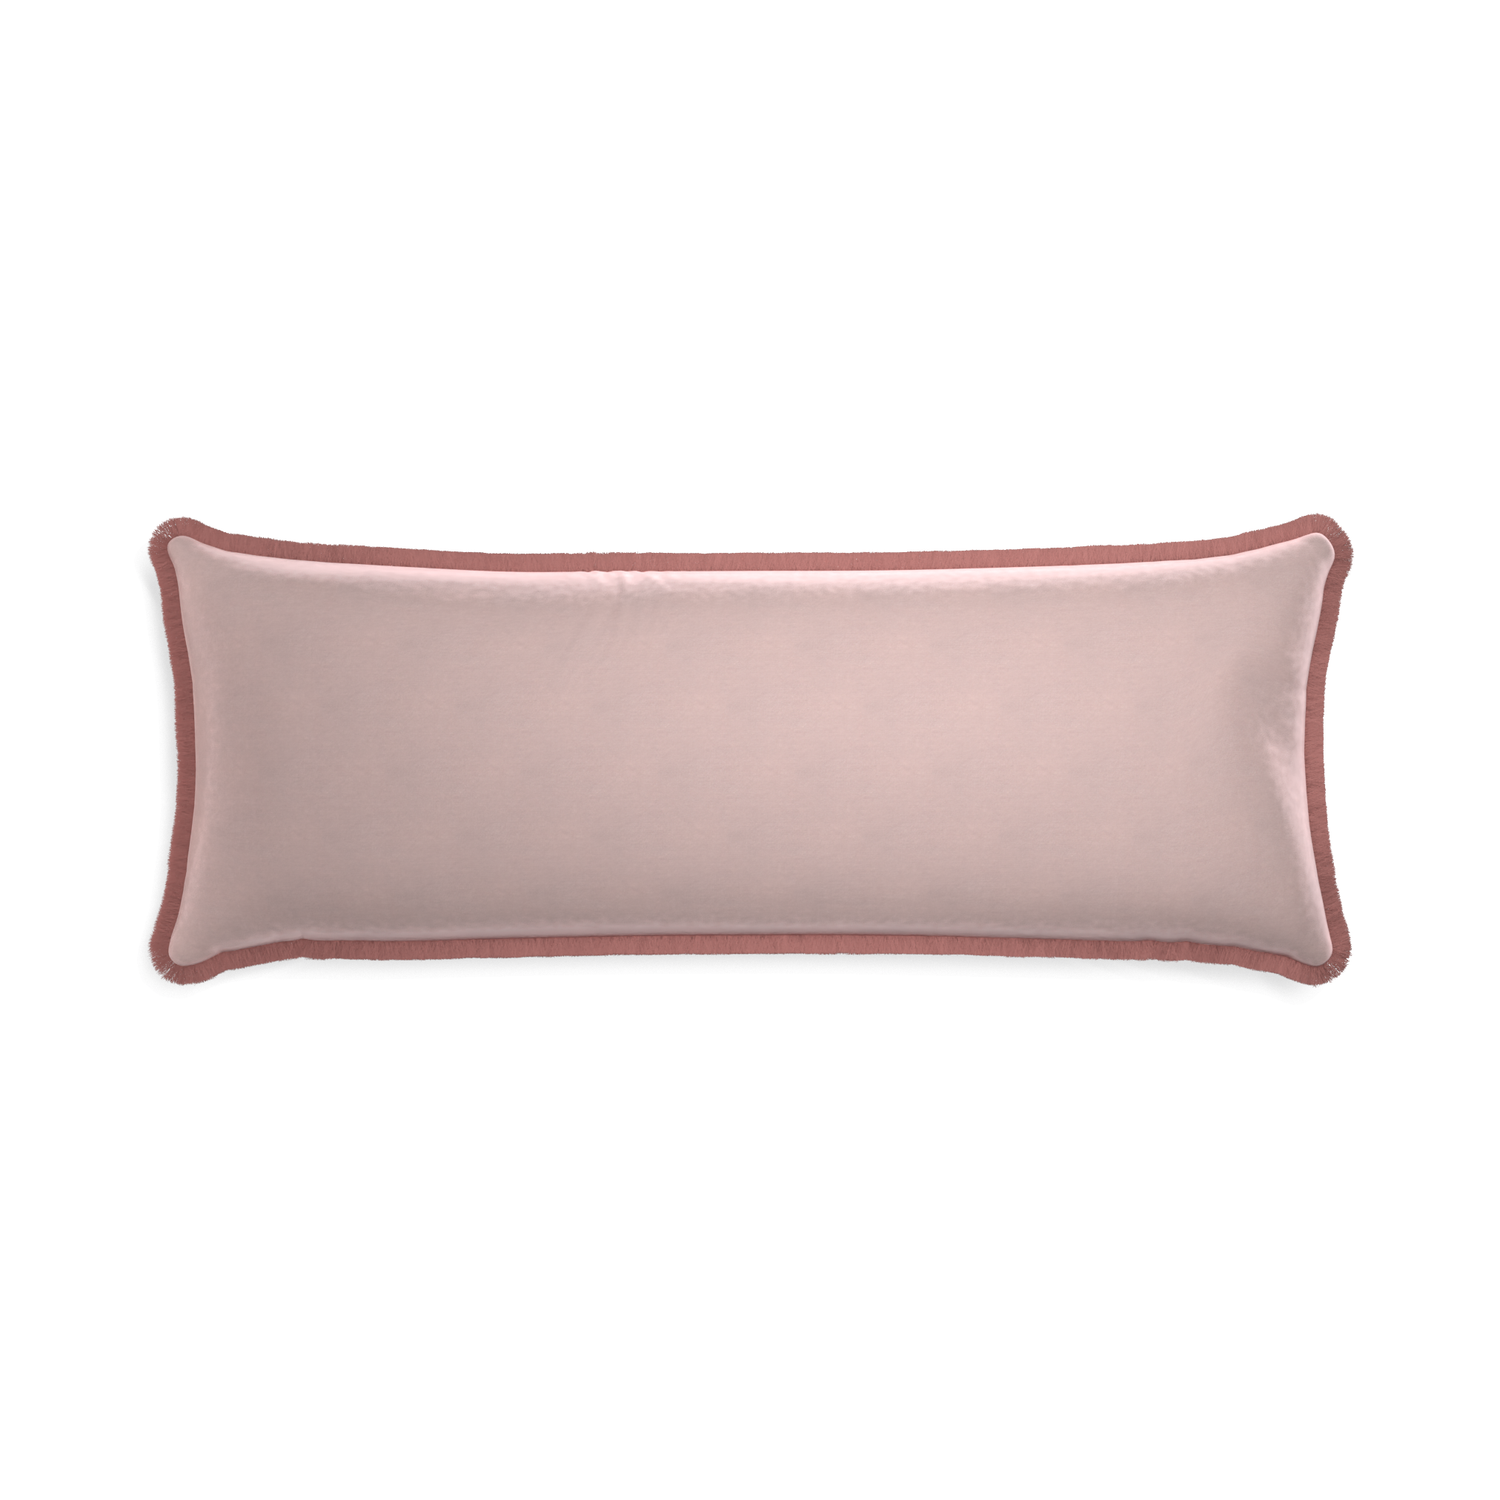 Xl-lumbar rose velvet custom pillow with d fringe on white background